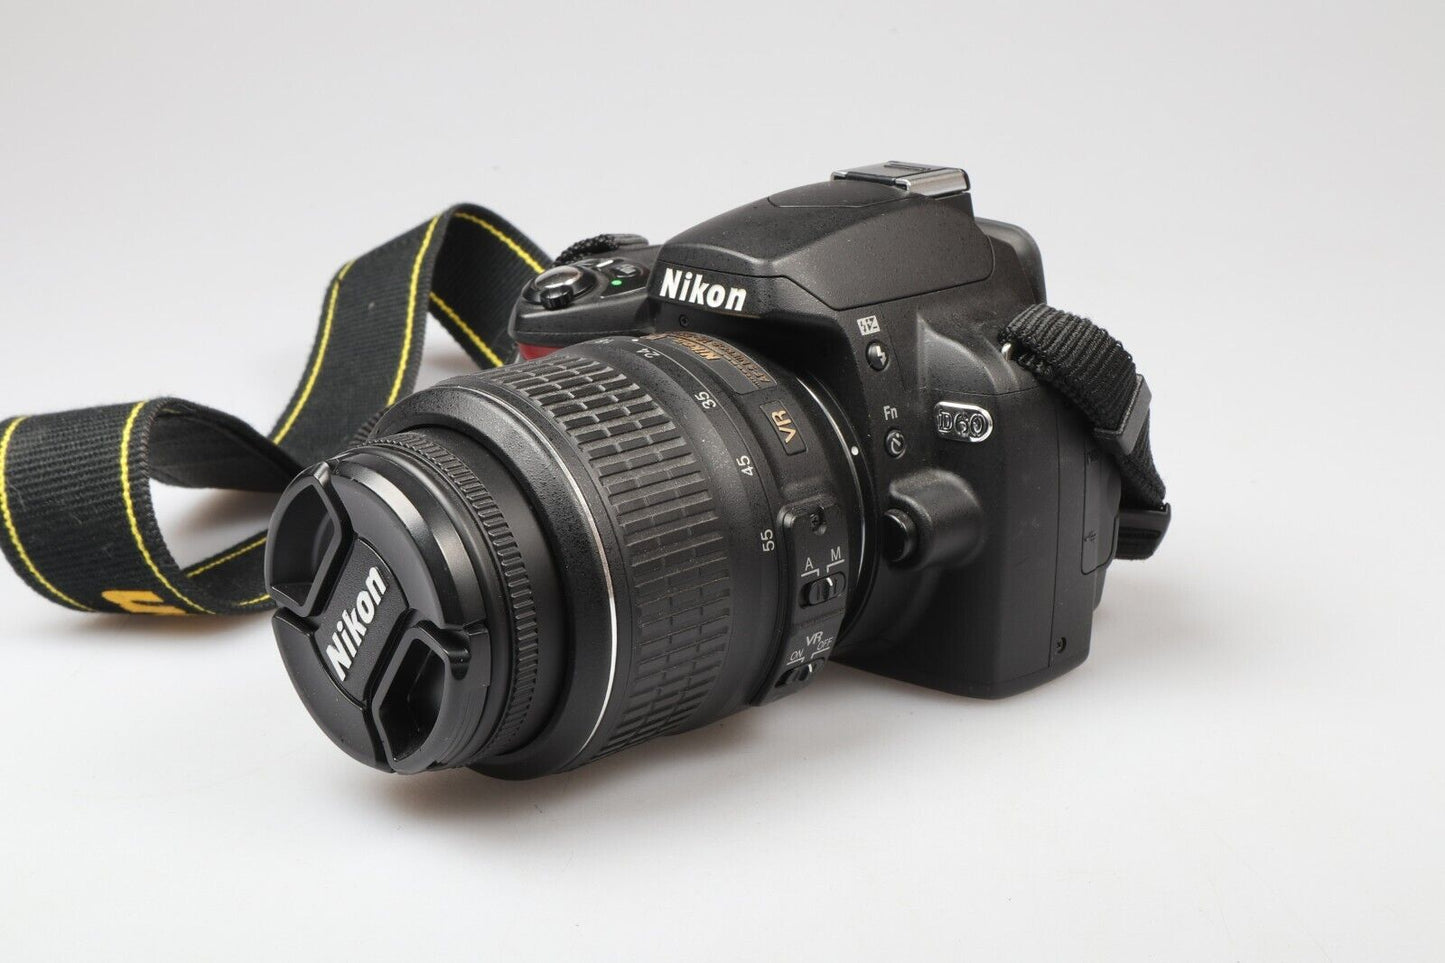 Nikon D69 | DSLR Camera | 10.2MP | NIKKOR AF-S 18-55mm Lens